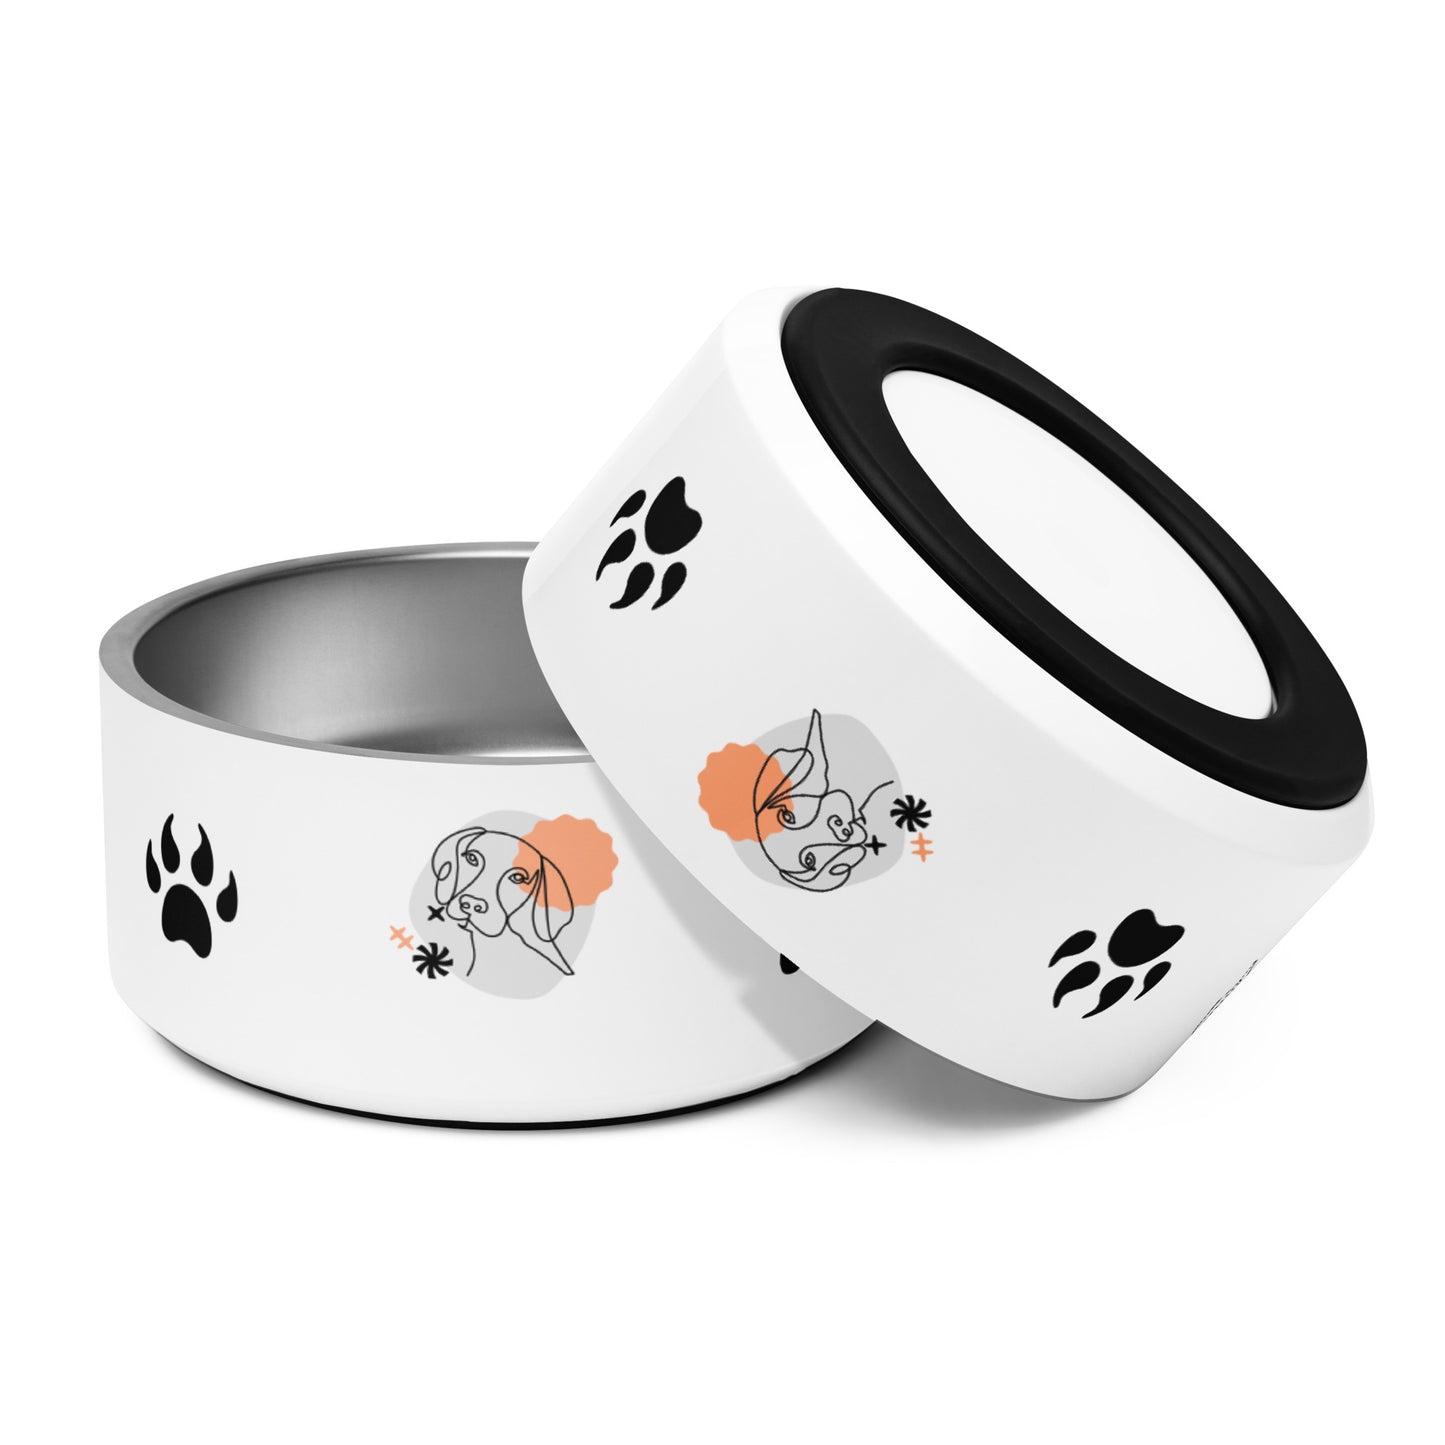 Pet bowl - Dog & Paw